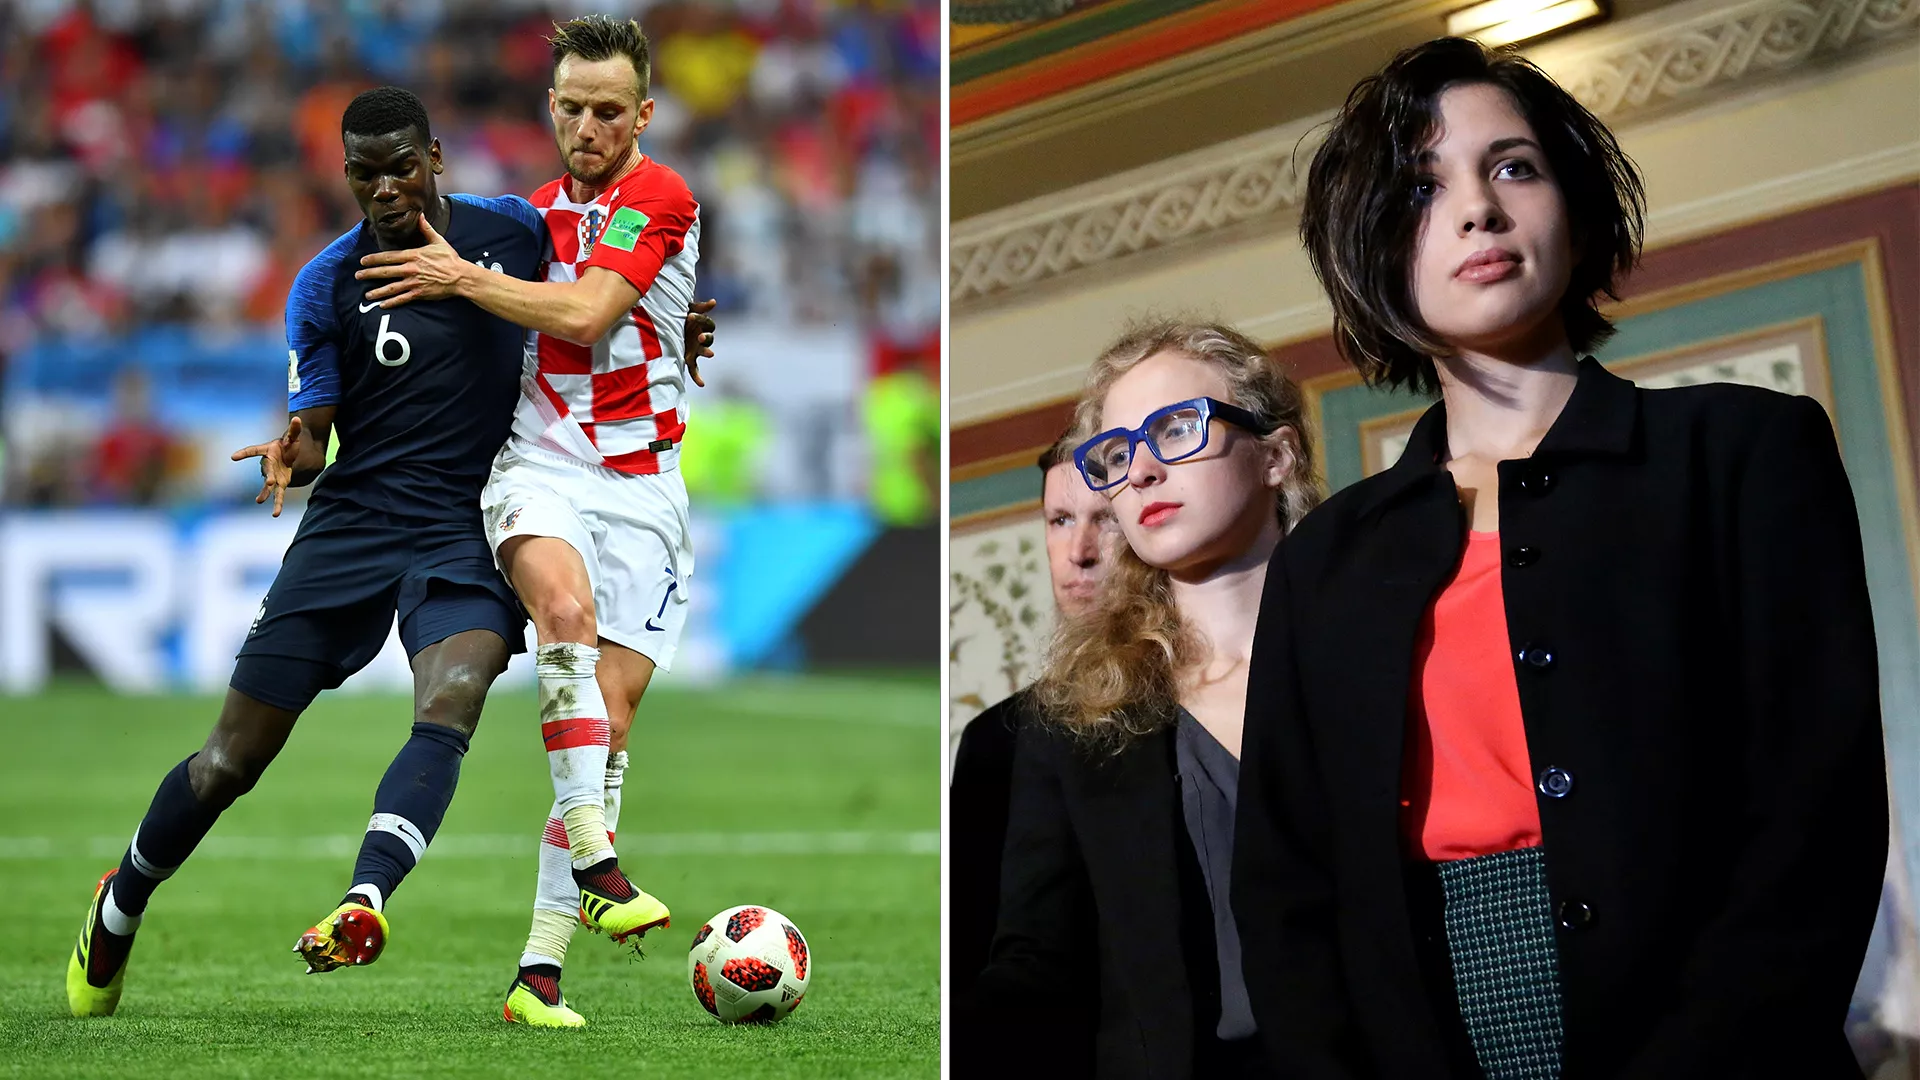 Flere personer stormet banen under VM-finalen - nå tar Pussy Riot på seg ansvaret